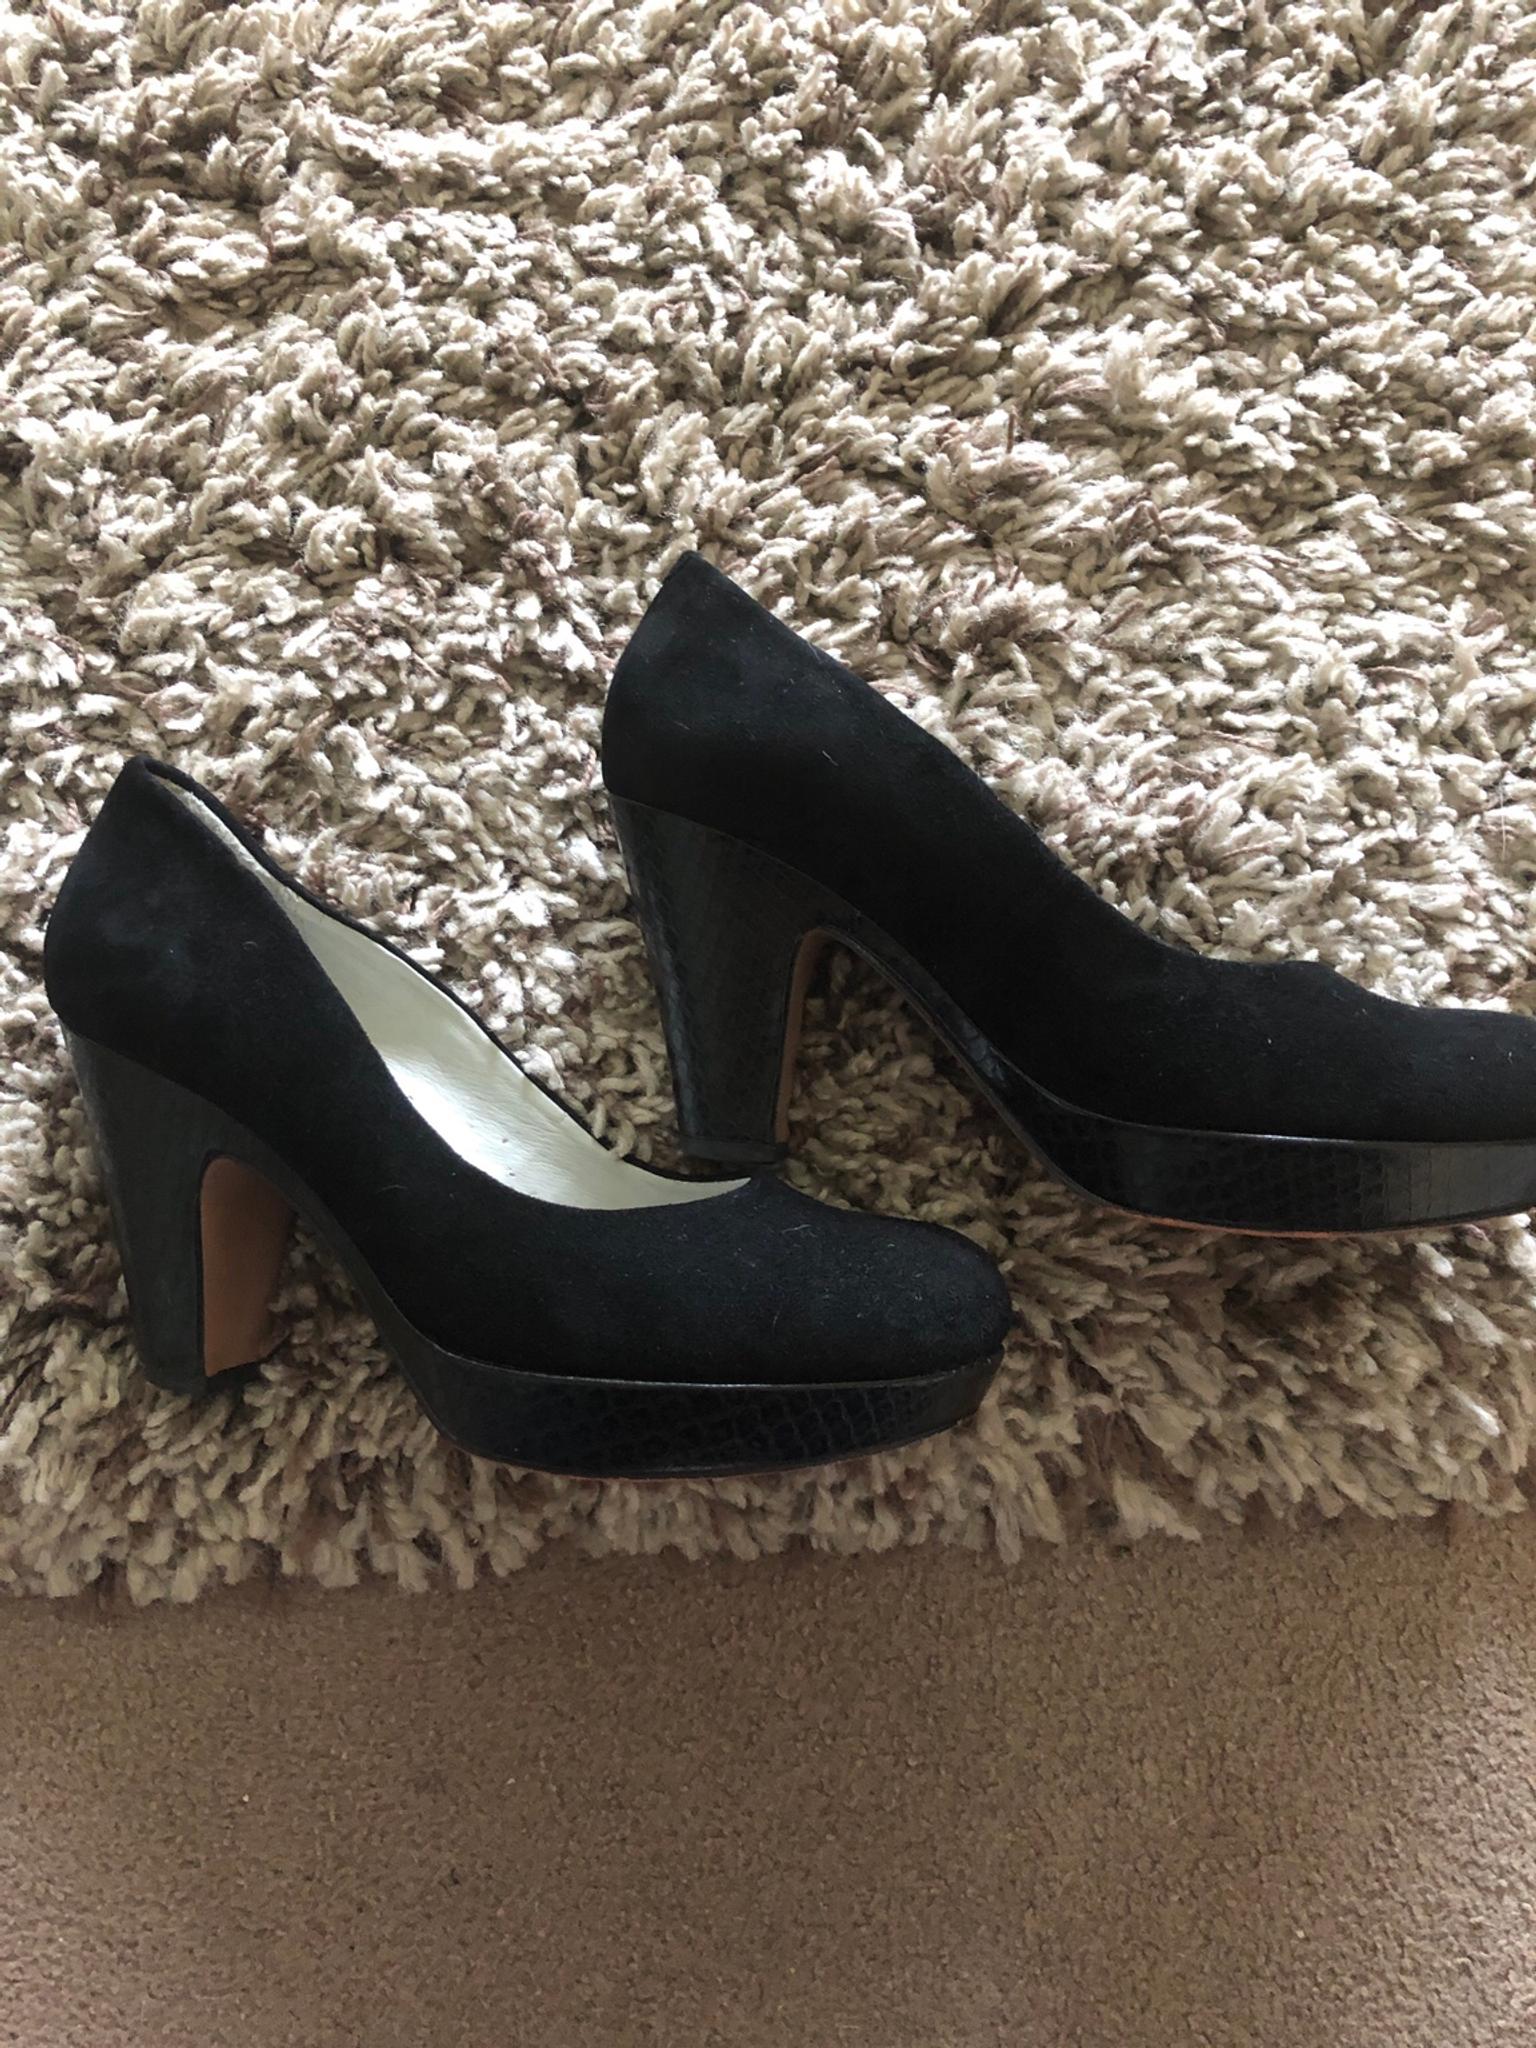 black clarks heels